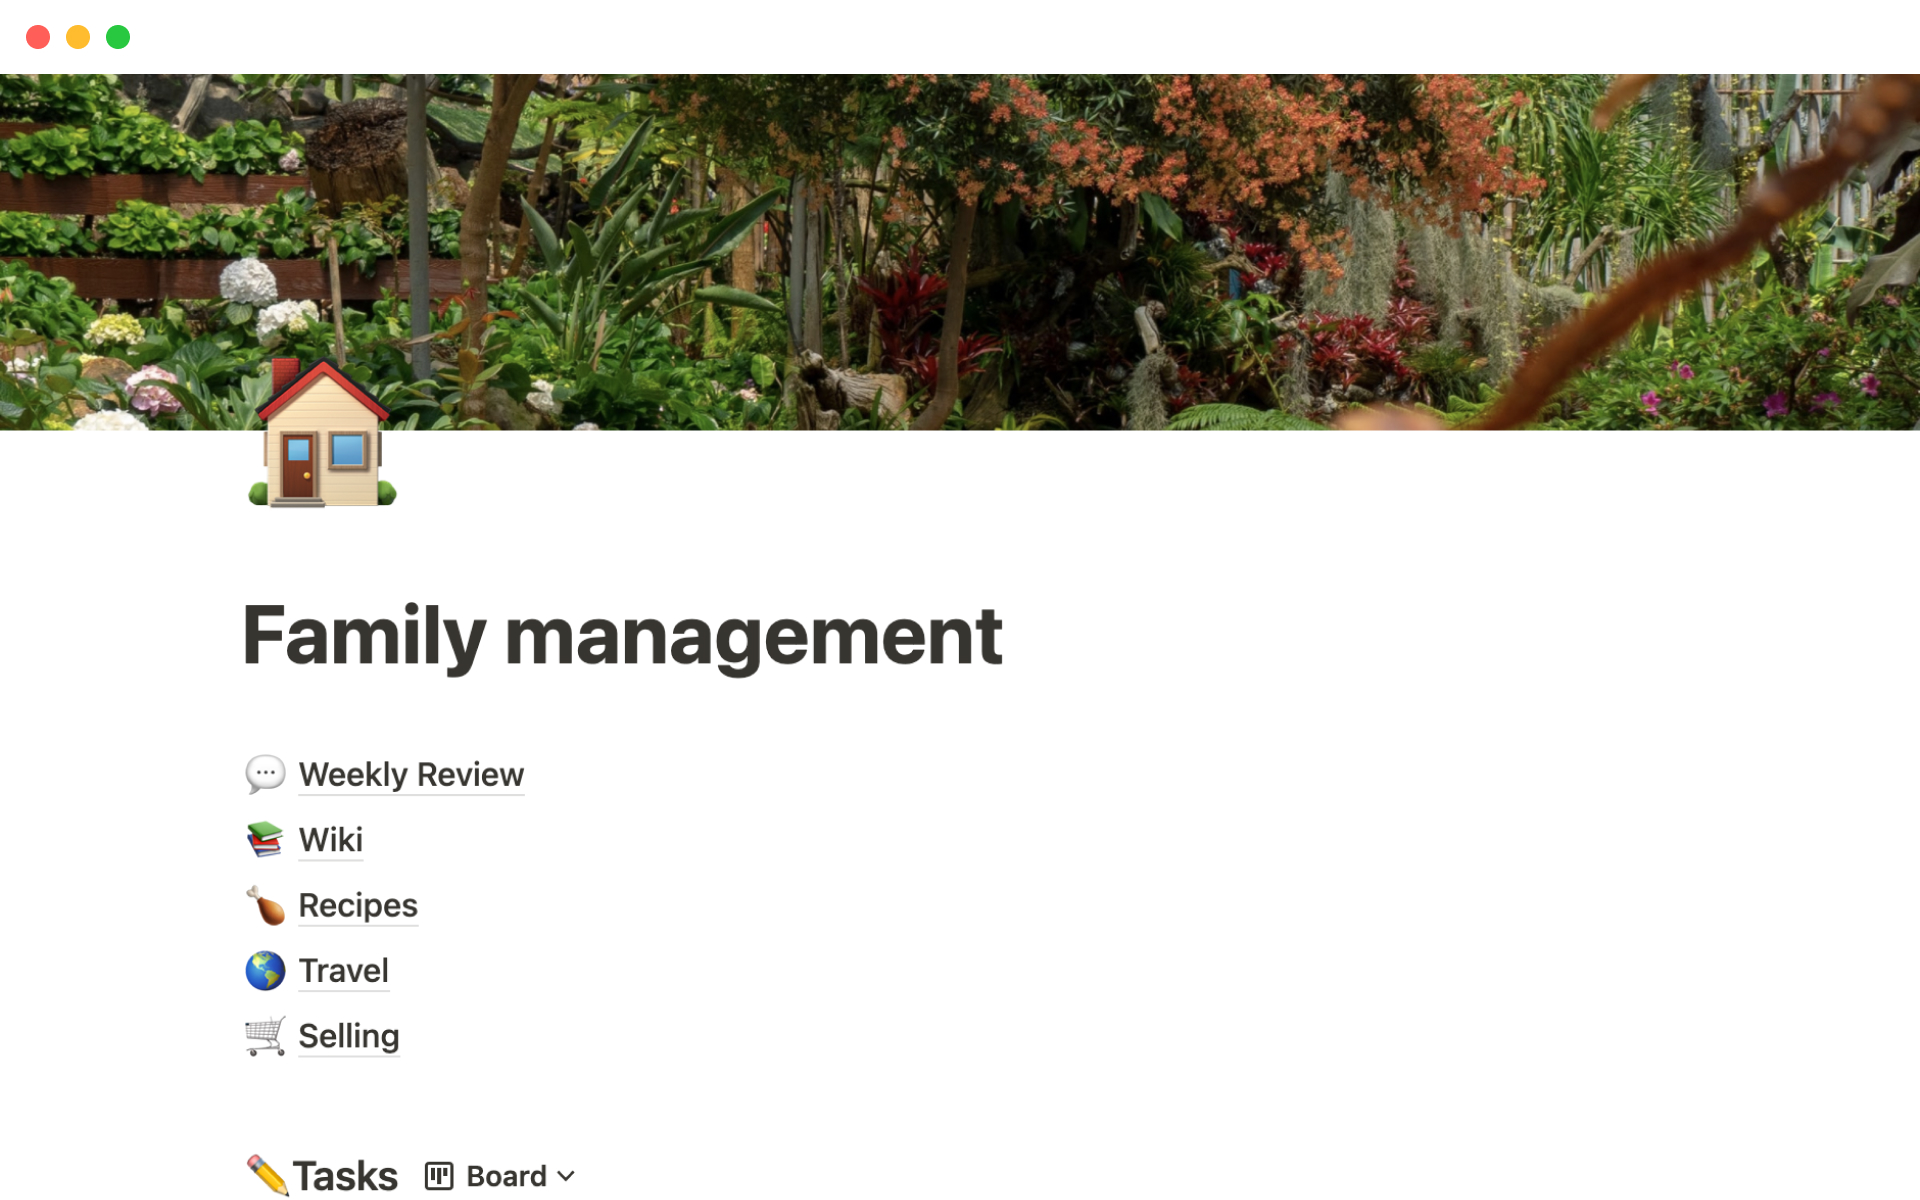 Vista previa de una plantilla para Family management